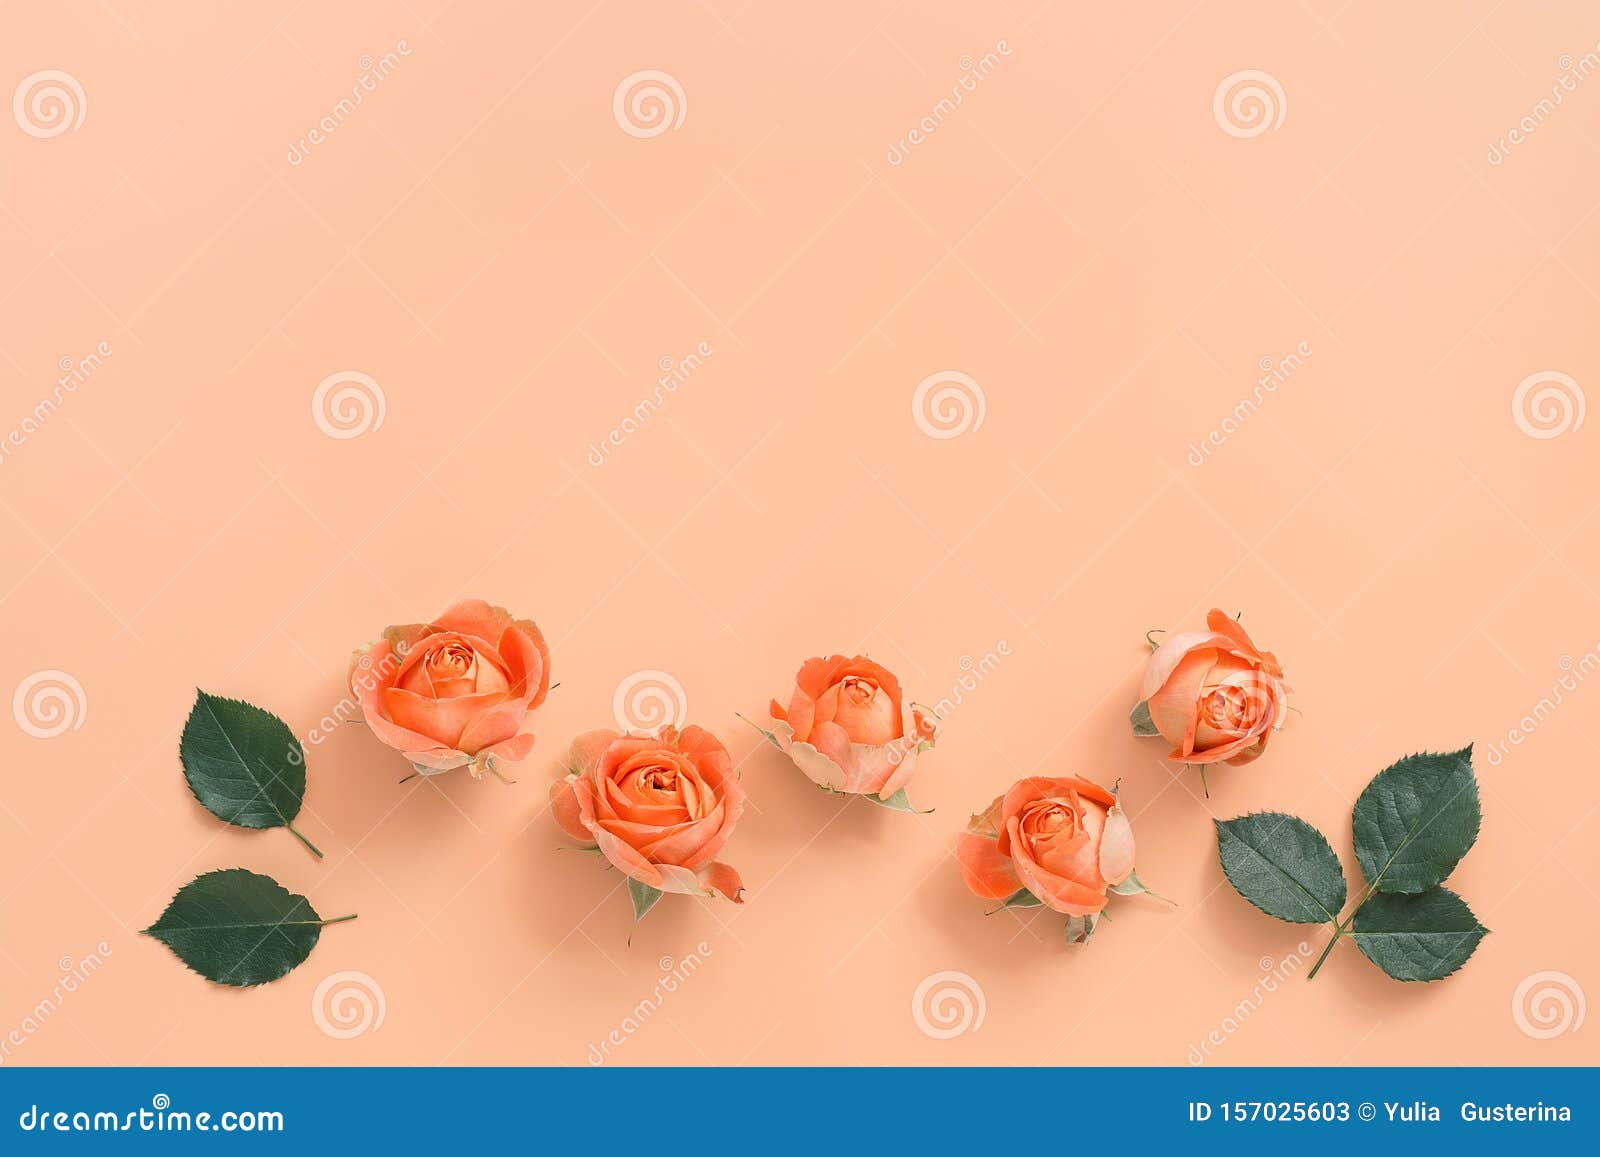 Bó hoa nhẹ nhàng với hoa hồng san hô trên nền đào nhạt là một sự kết hợp tuyệt vời giữa sắc hồng và màu đào. Hãy thưởng thức vẻ đẹp của những bông hoa tươi tắn và hương thơm nồng nàn, đem lại cho bạn sự thoải mái và cảm giác thư giãn.